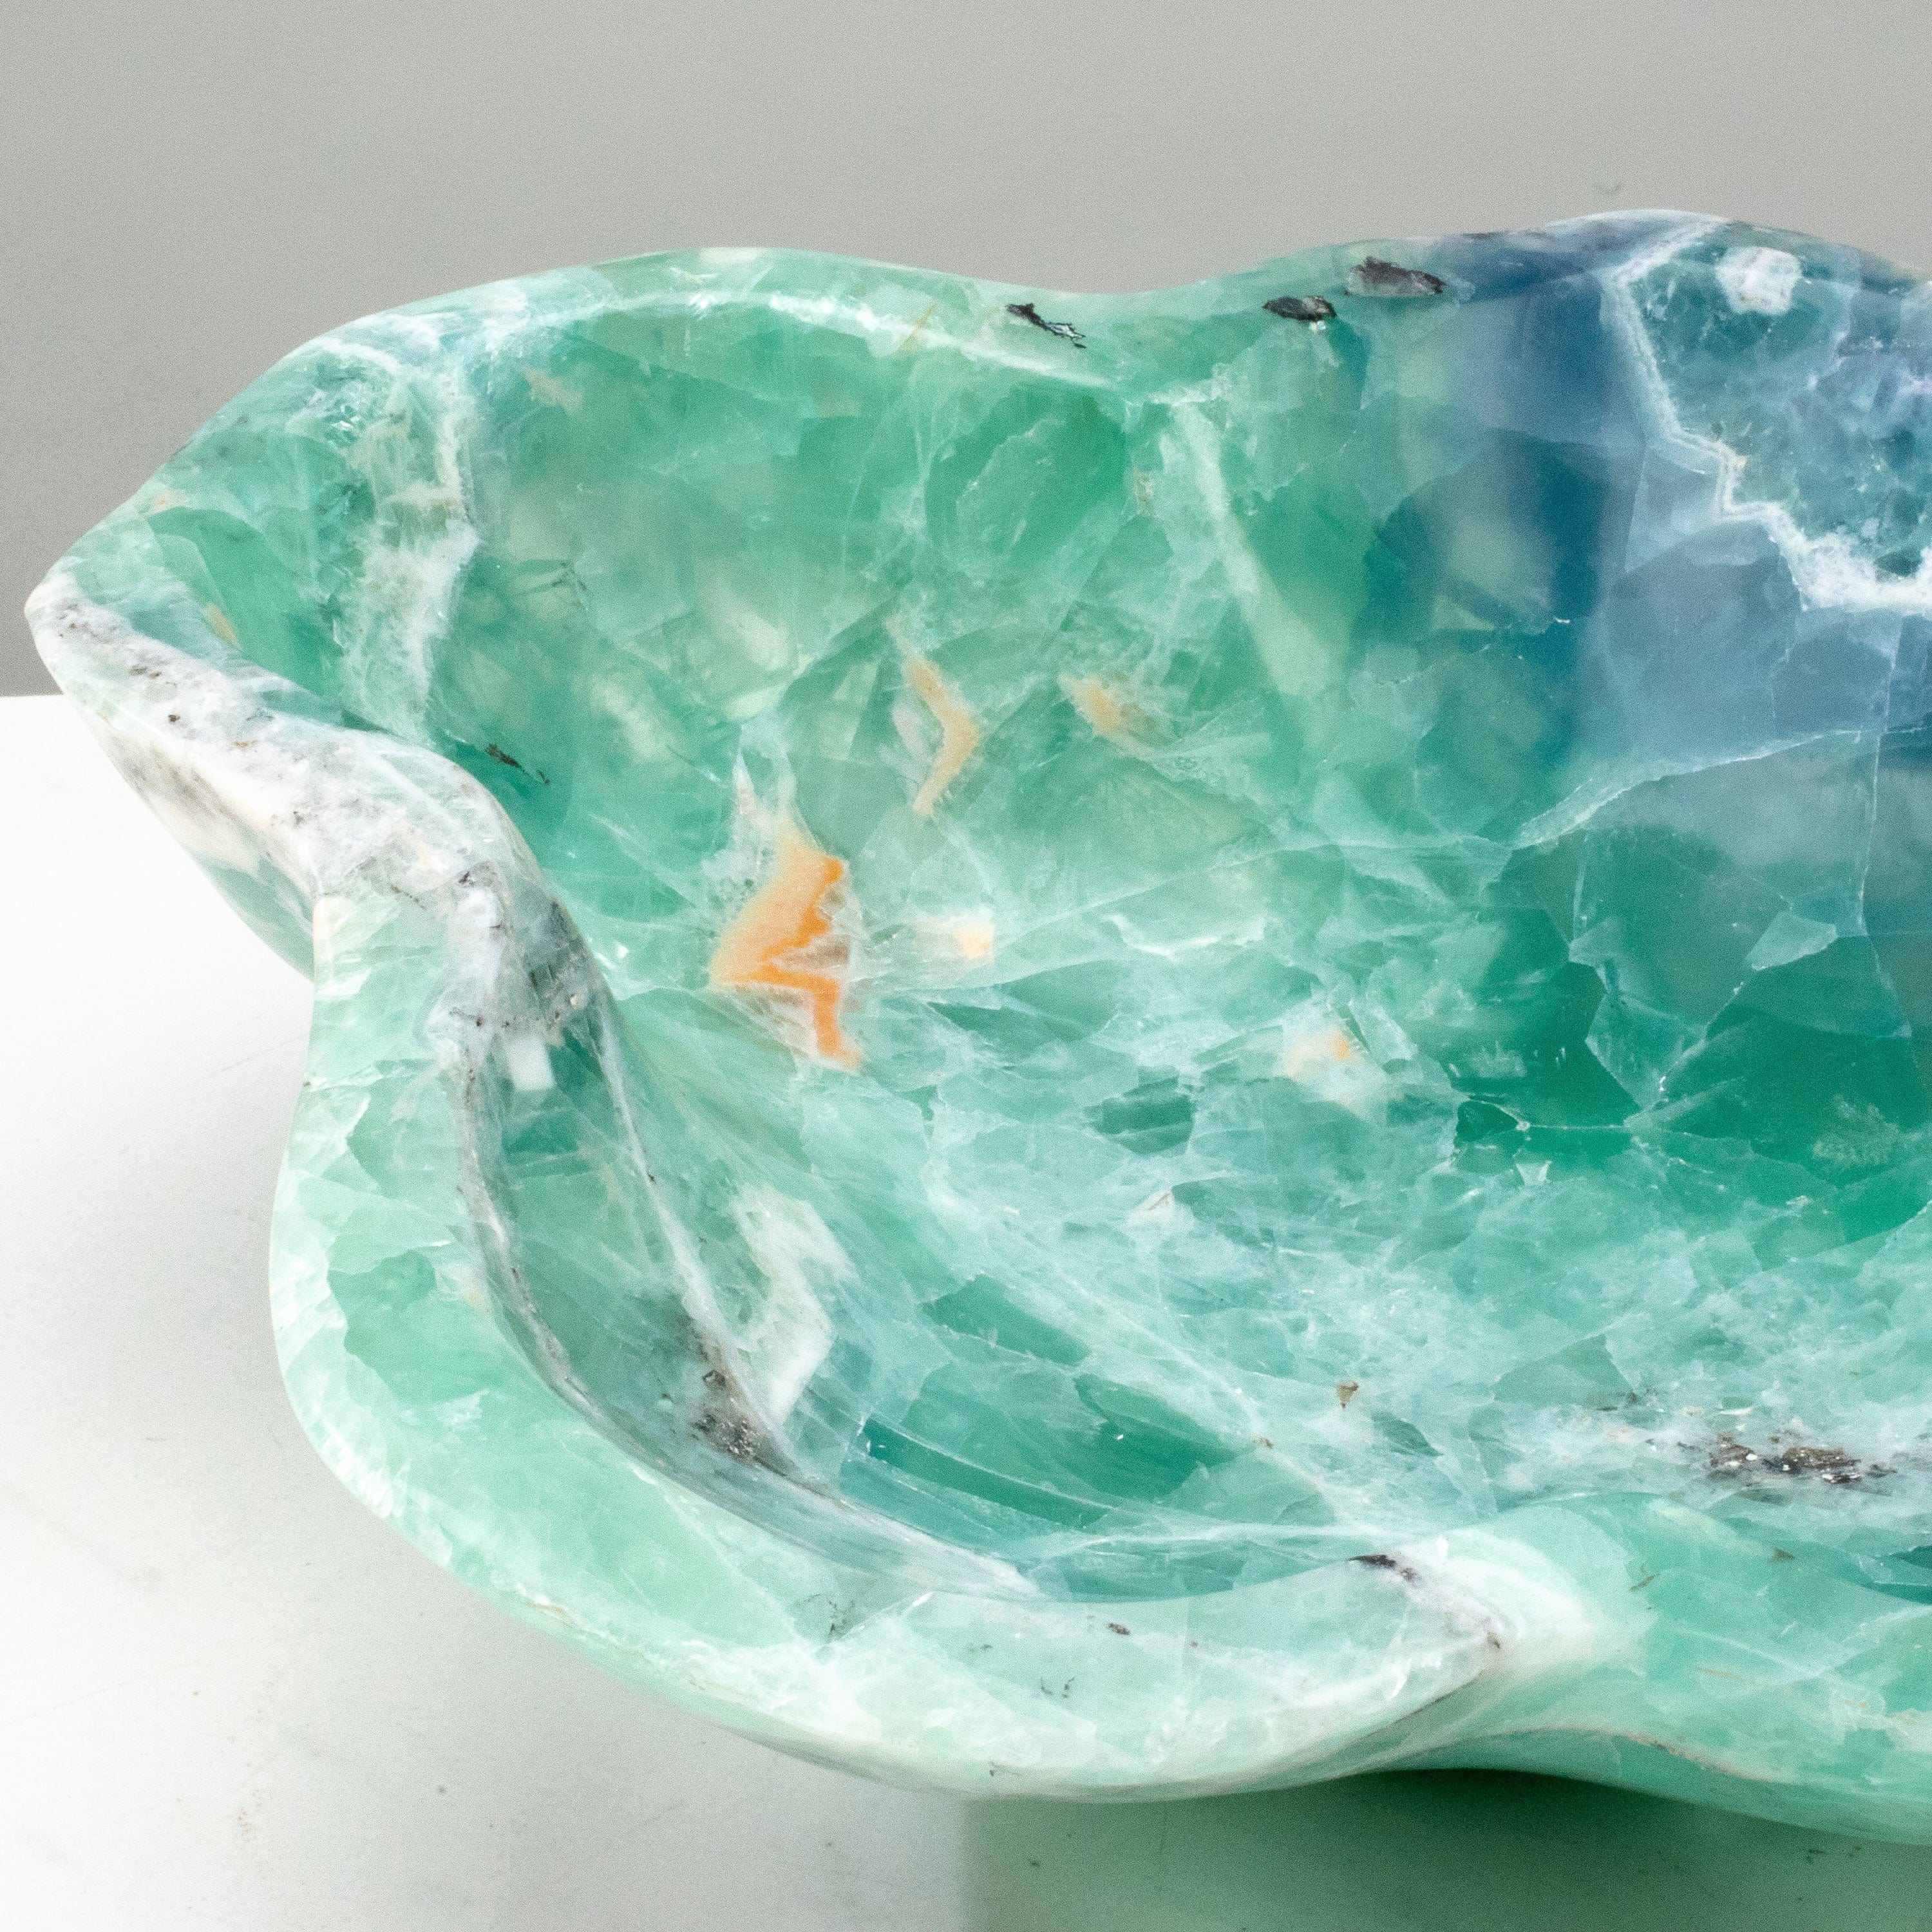 KALIFANO Gemstone Bowls Natural Blue / Green Fluorite Bowl 13" BFL6800.001